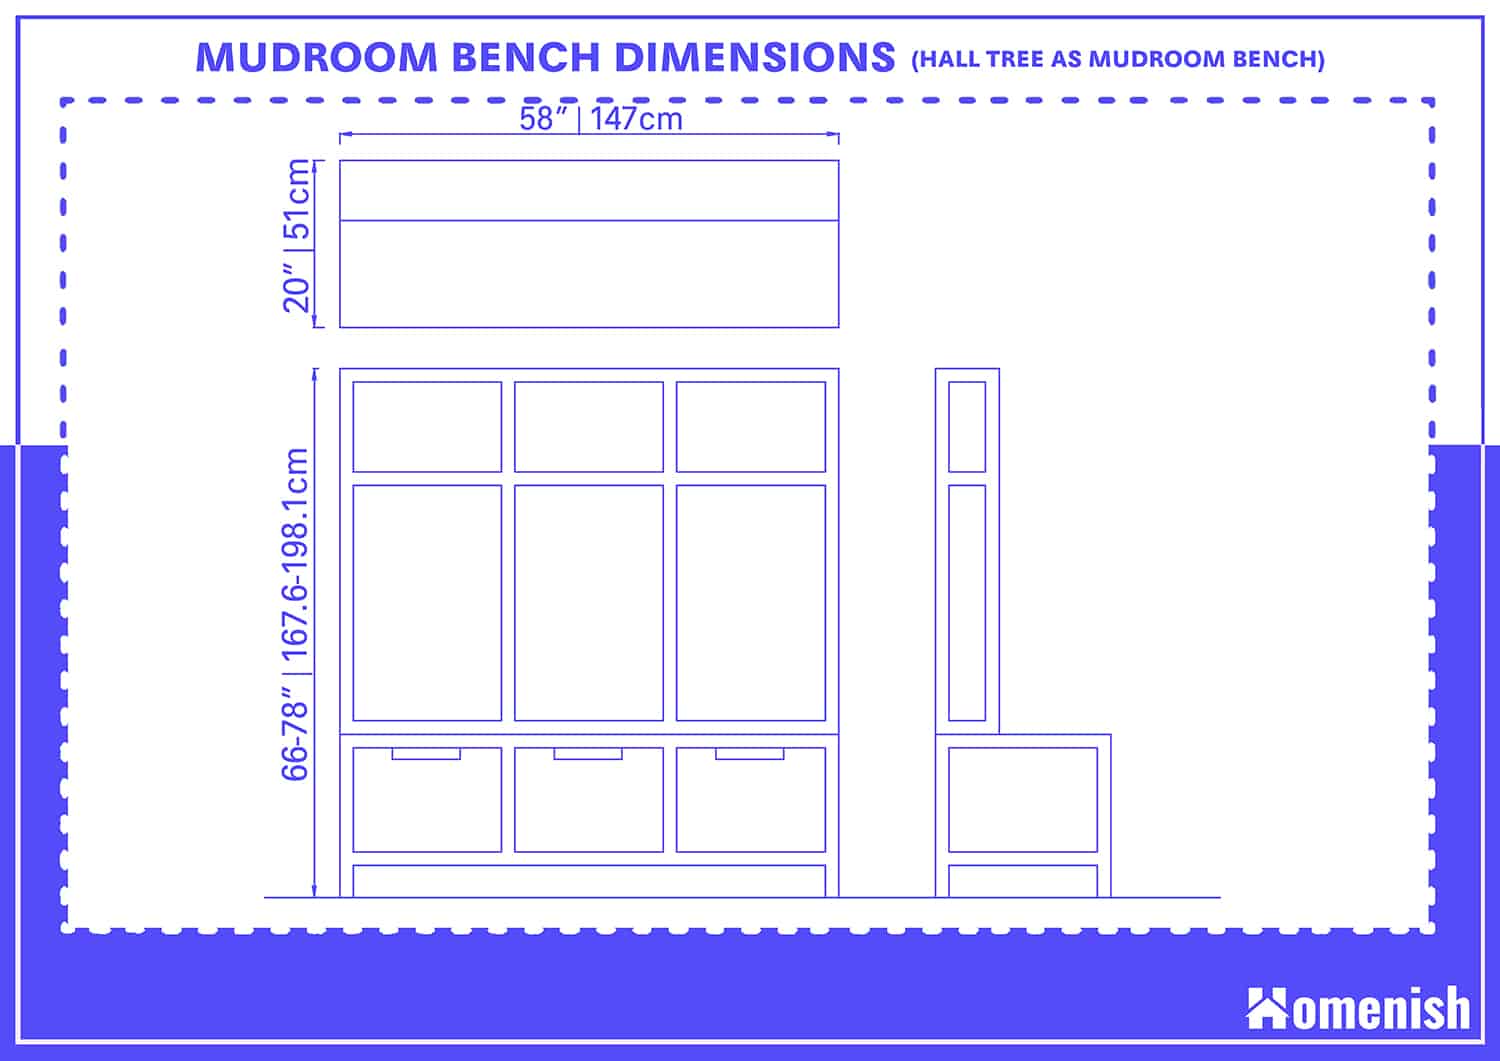 Mudroom Bench Dimensions (Hall Tree as Mudroom Bench)